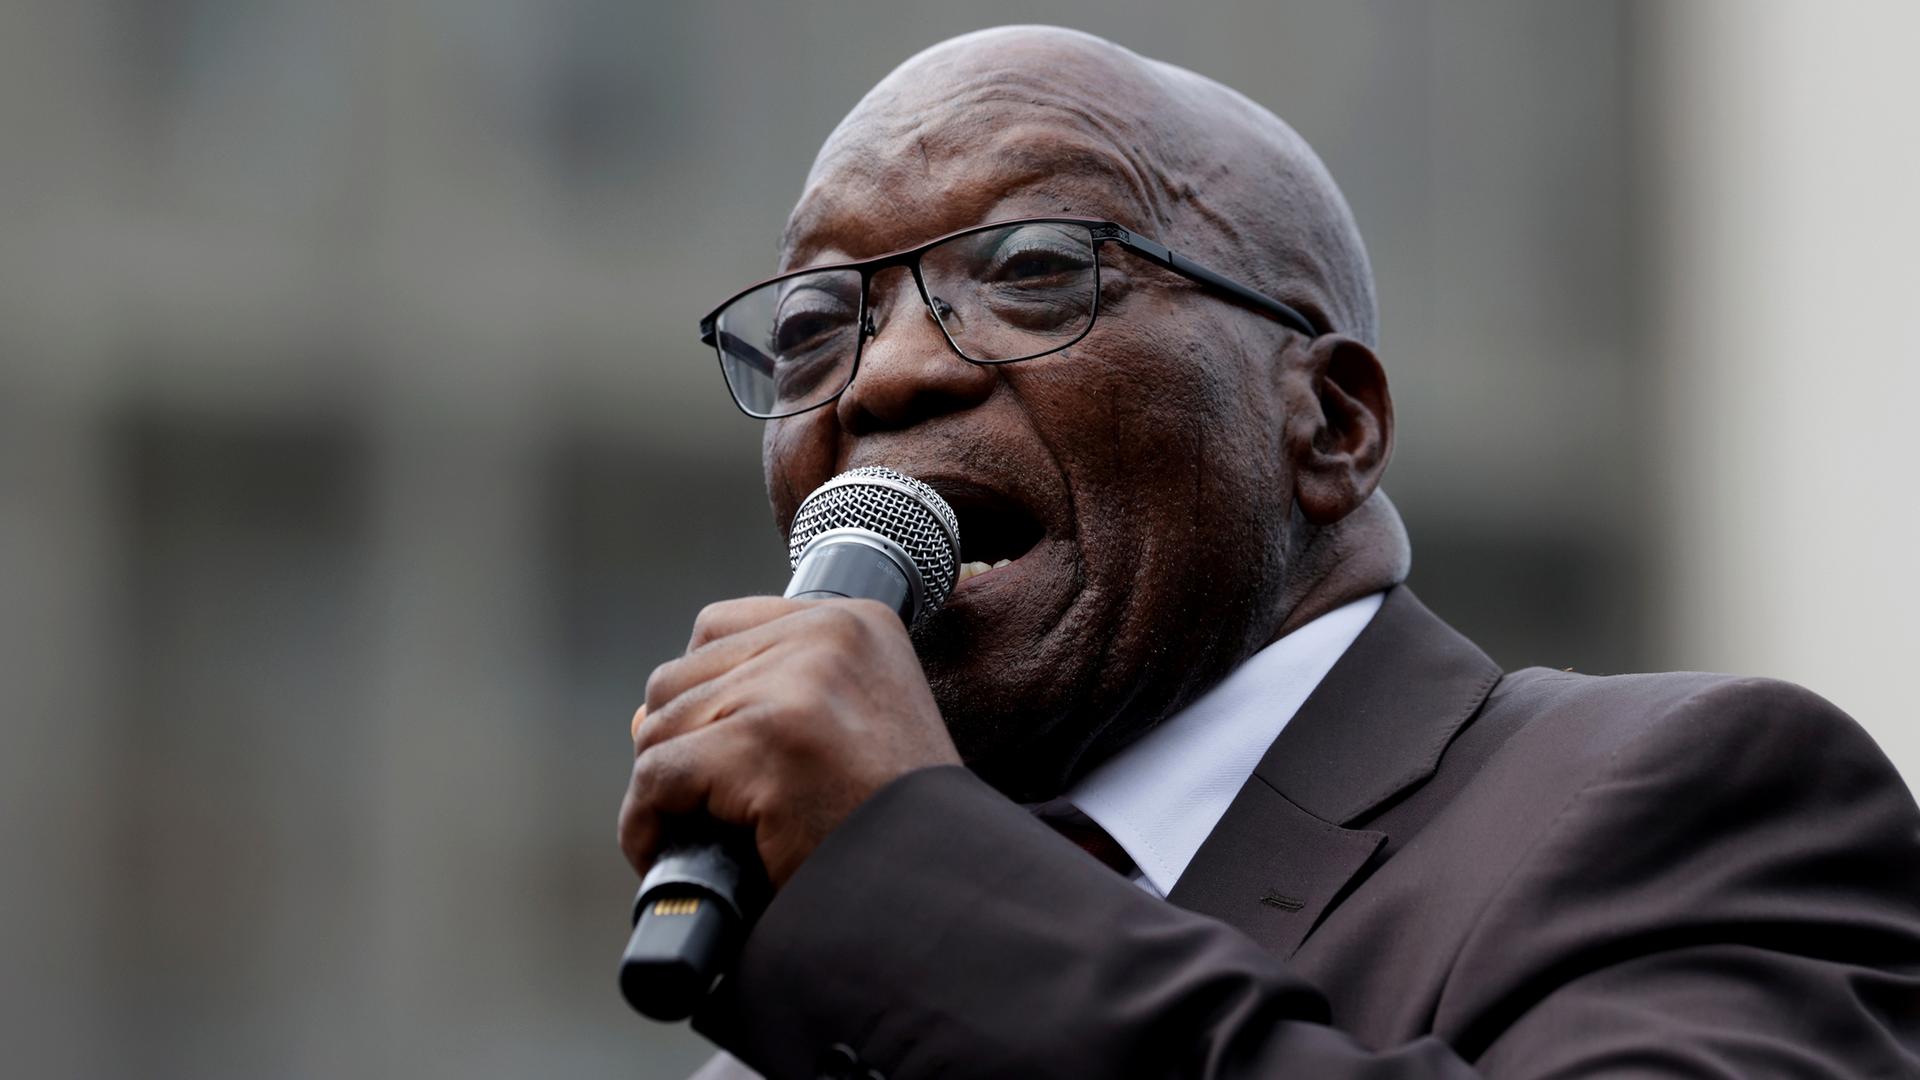 Zuma im dunklen Jackett und mit Brille spricht engagiert in ein Mikrofon.